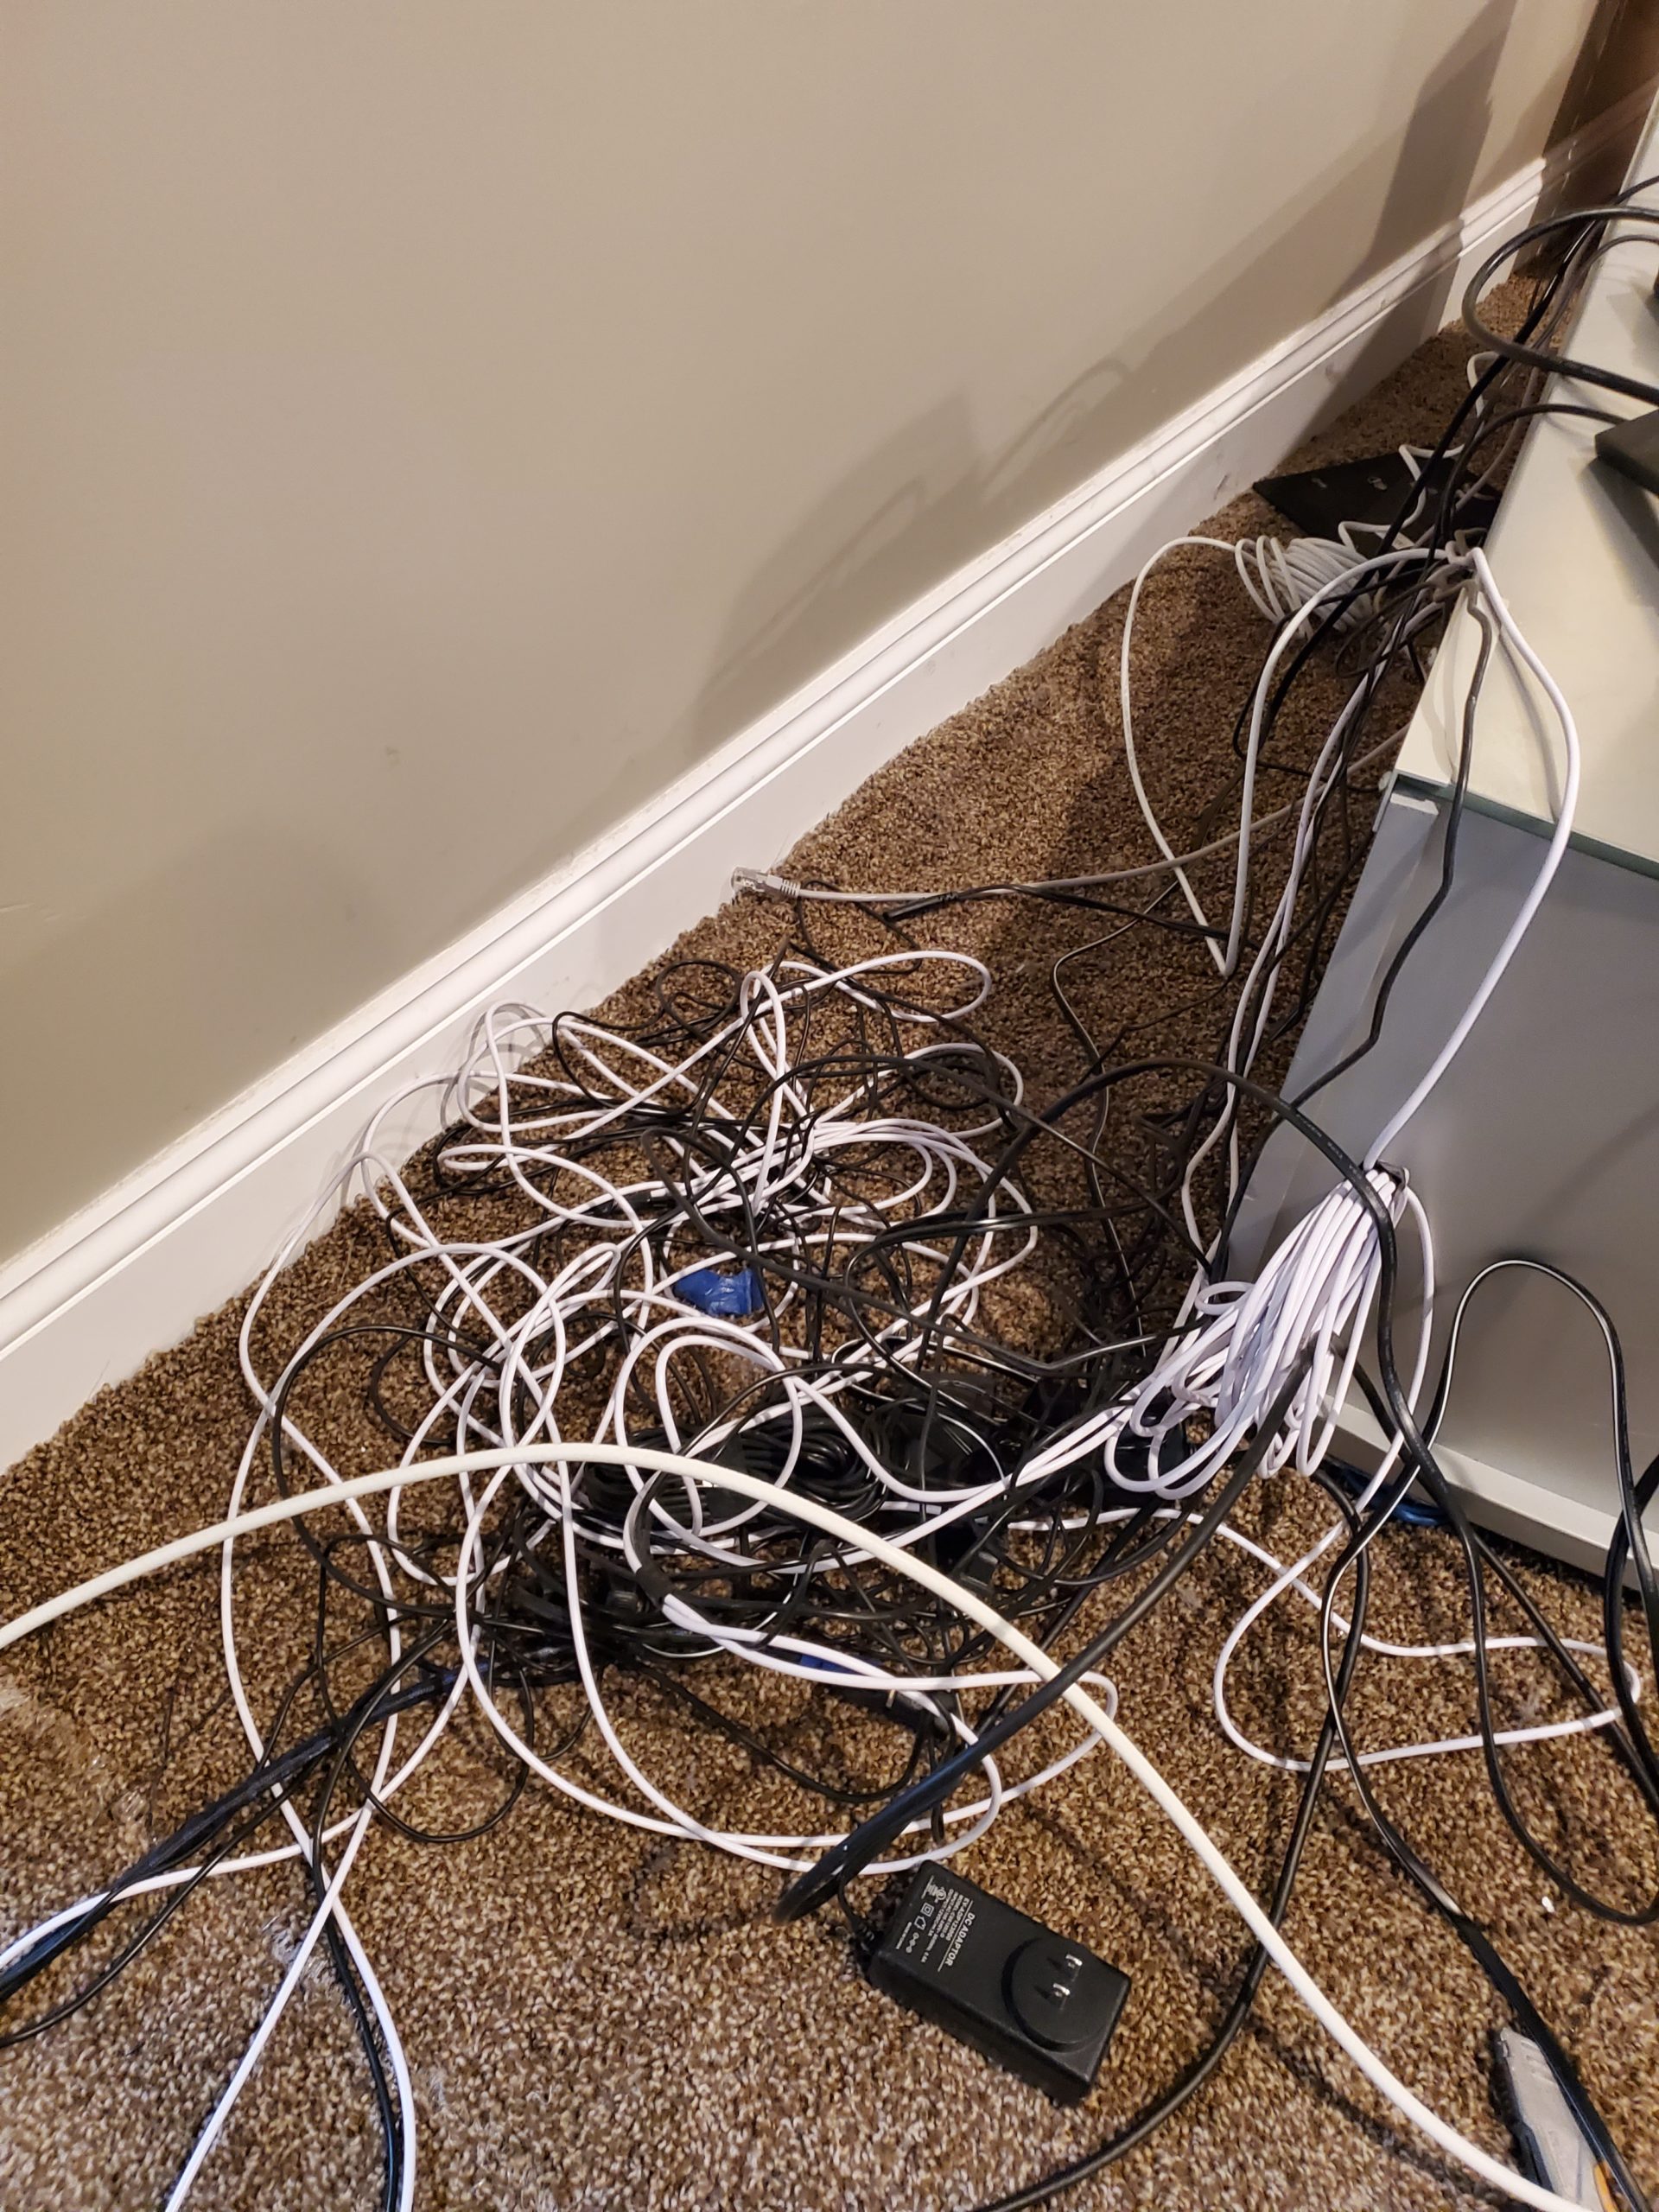 Messy wiring